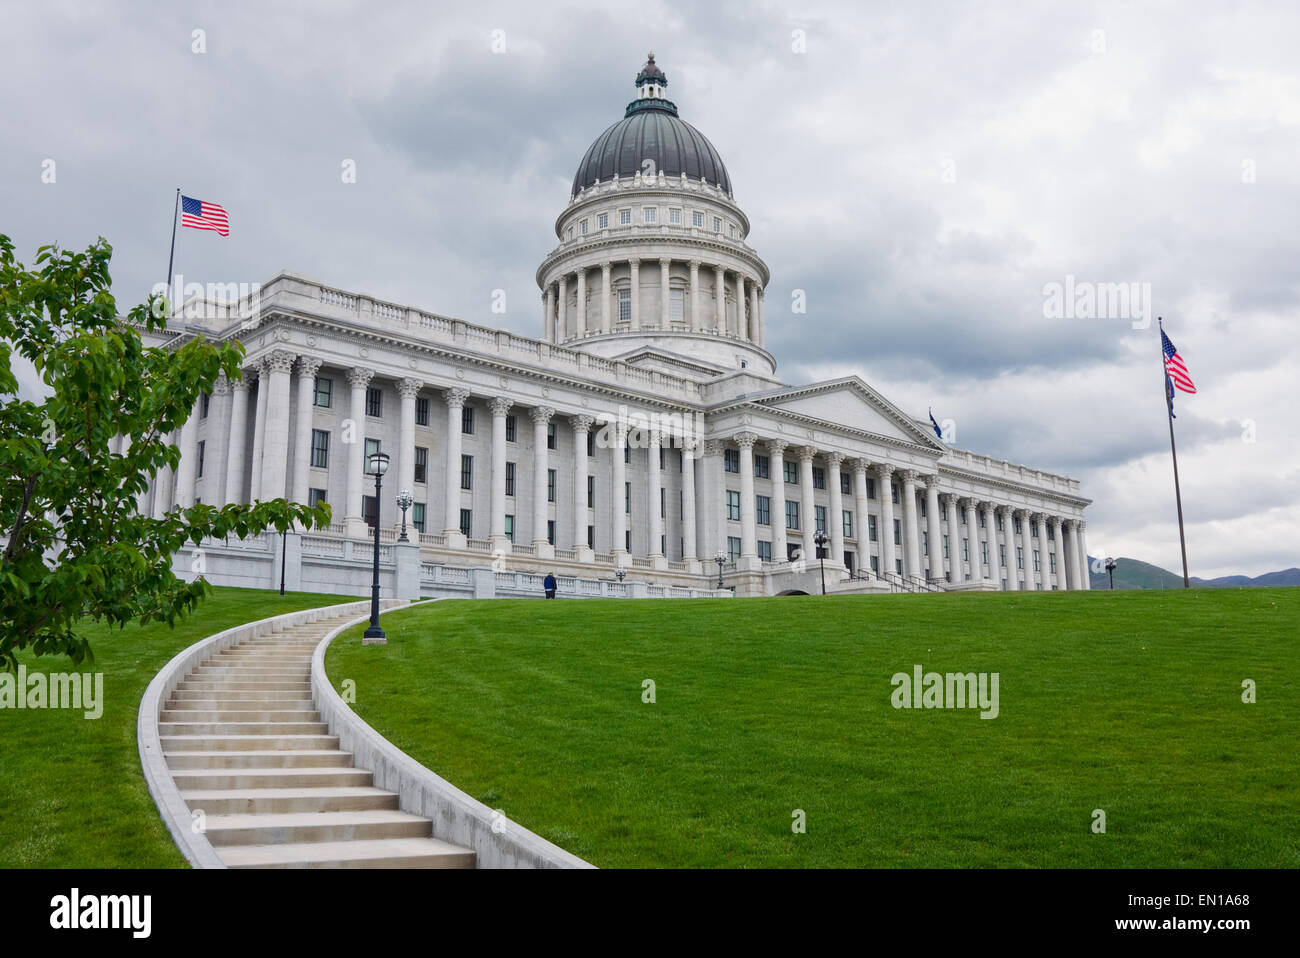 State Capitol Building in Salt Lake City, Utah Stock Photo